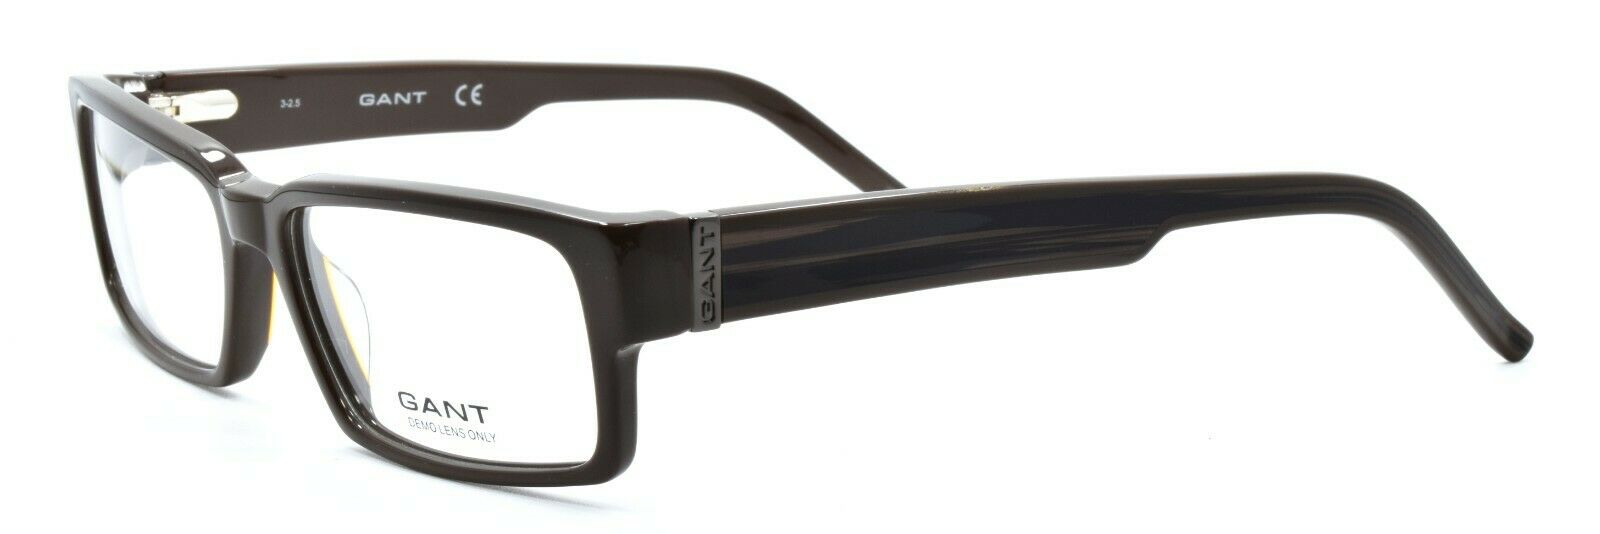 1-GANT G Bendels BRN Men's Eyeglasses Frames Rectangle 53-15-140 Brown + CASE-715583138186-IKSpecs